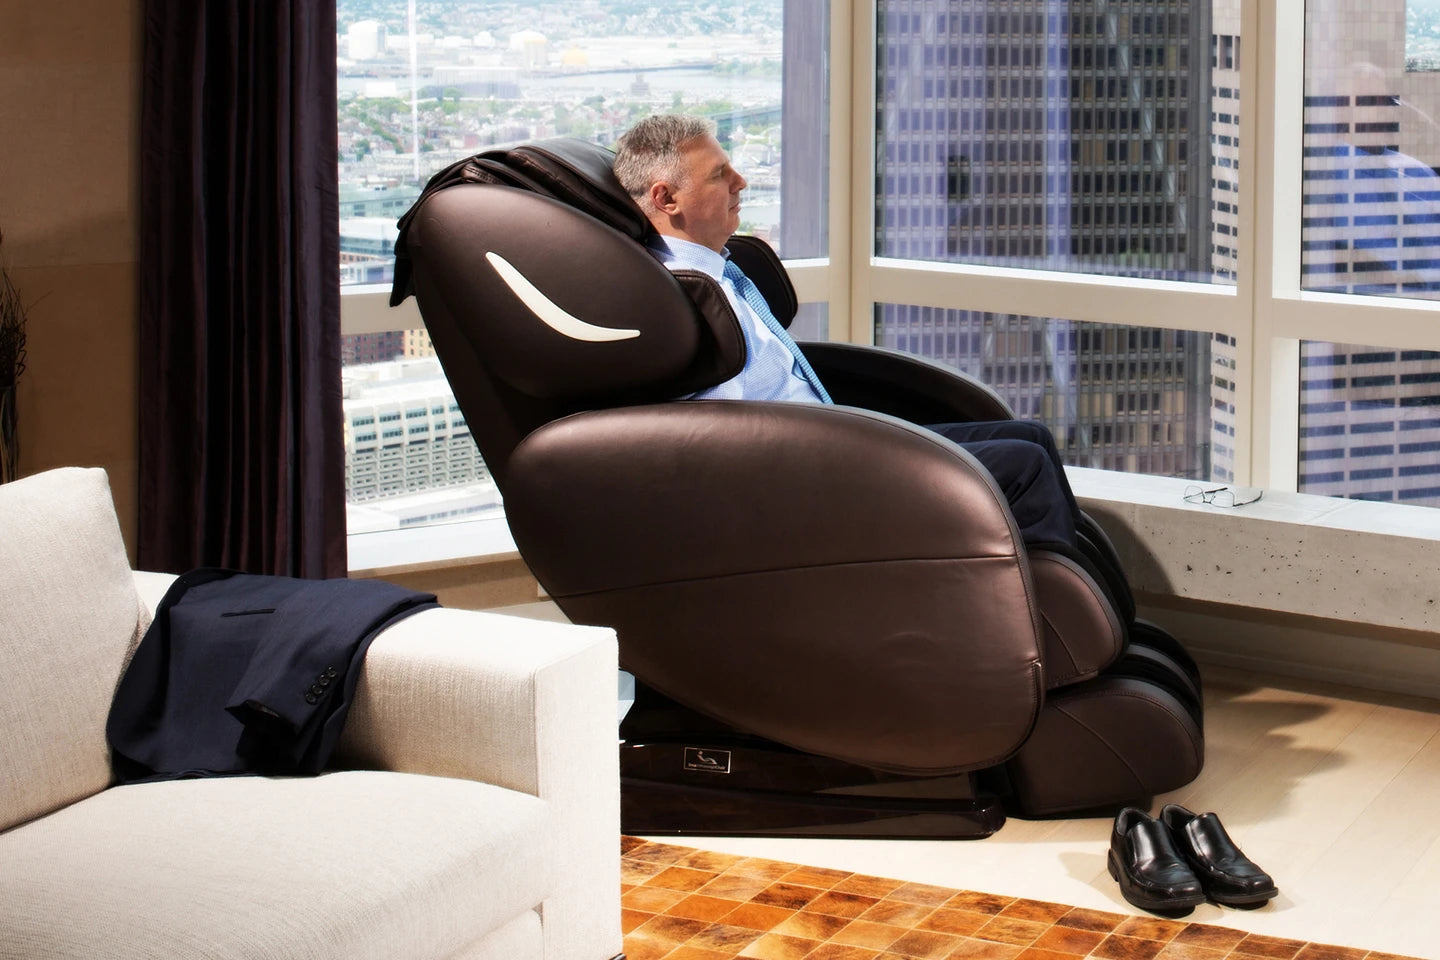 Infinity Smart Chair X3 3D/4D Massage Chair - 18306301